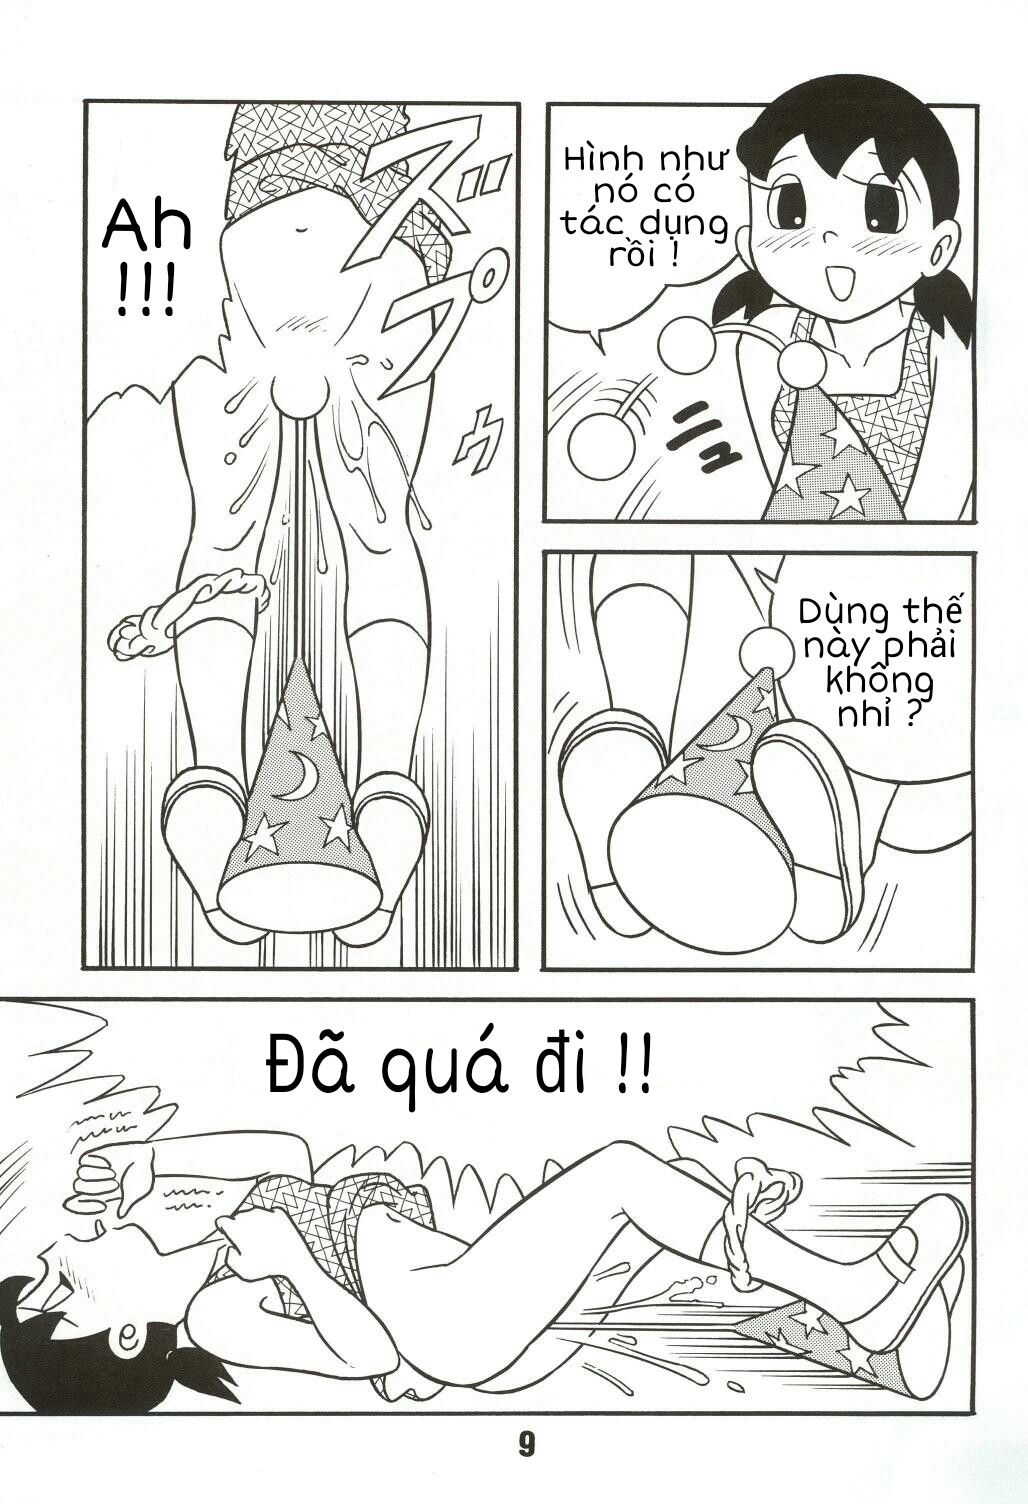 Tuyển Tập Doraemon Doujinshi 18+  Chapter 4- Xuka cô phù thủy nhỏ - Trang 7